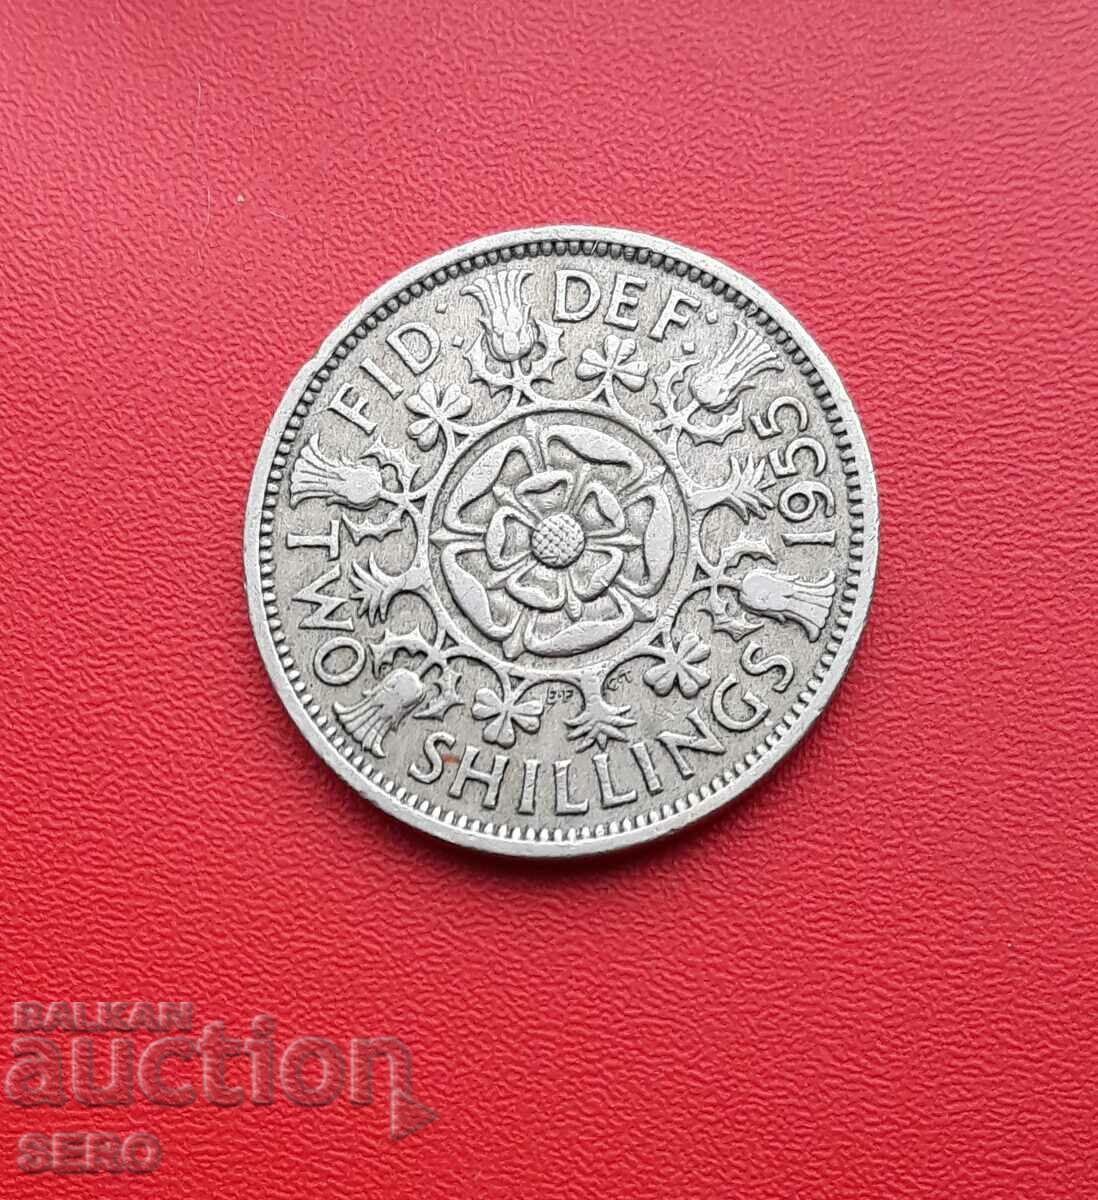 Great Britain-2 shillings 1955